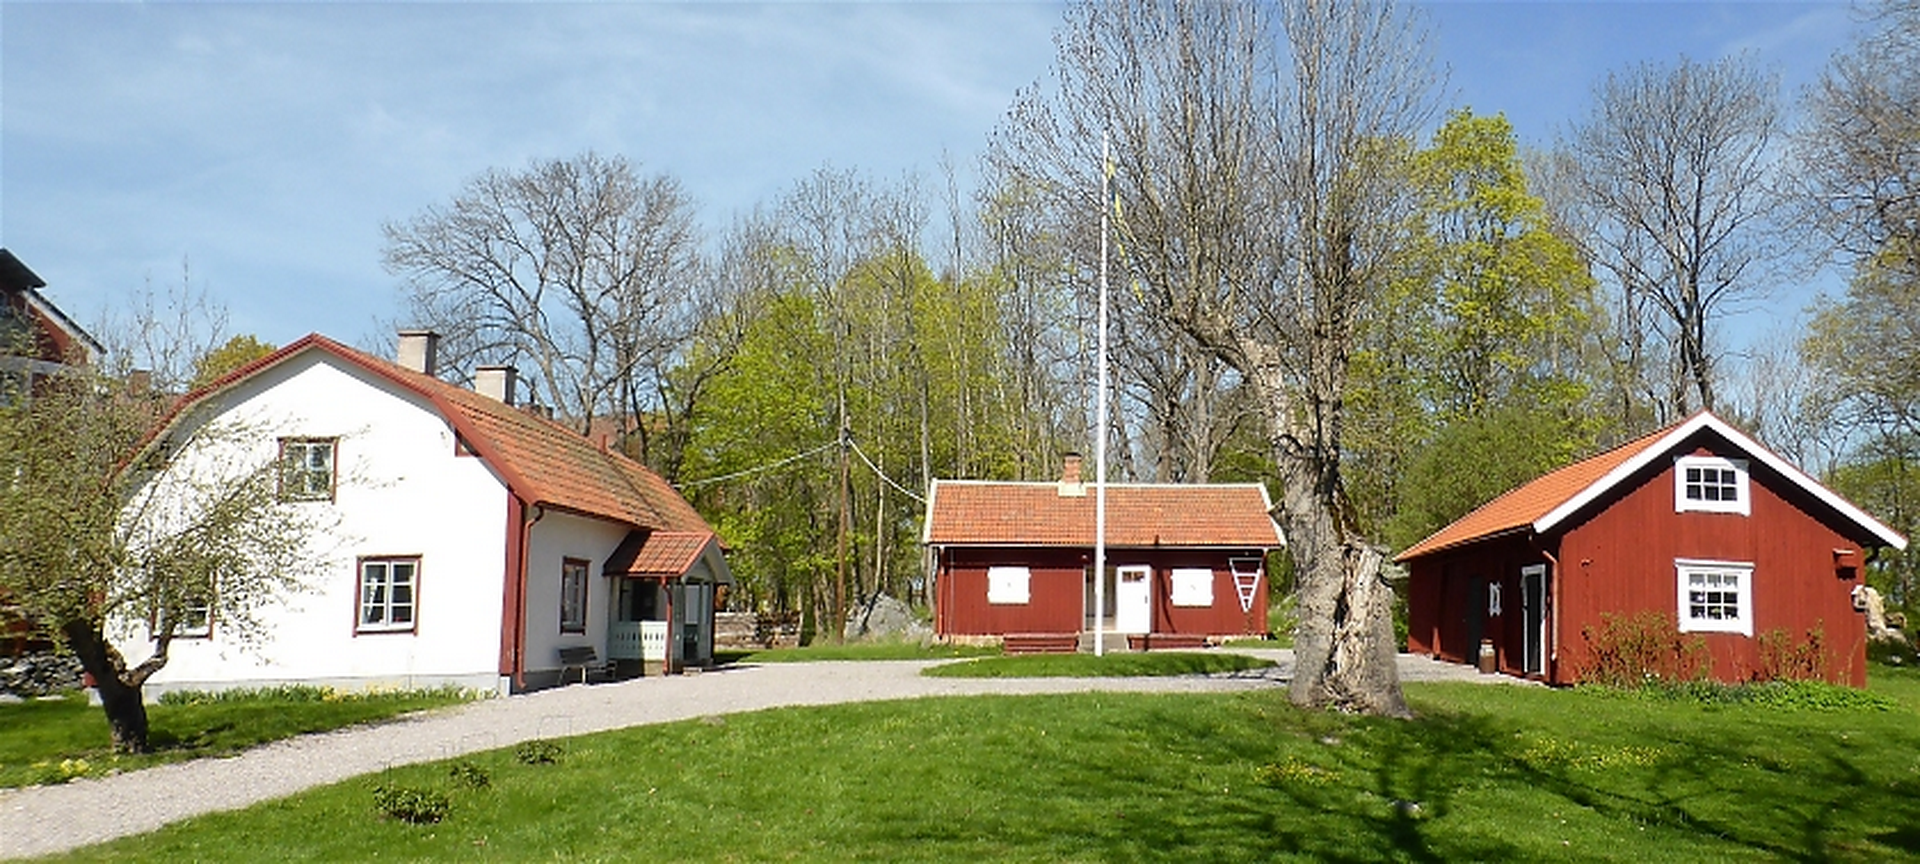 Hembygdsgården i Upplands Väsby